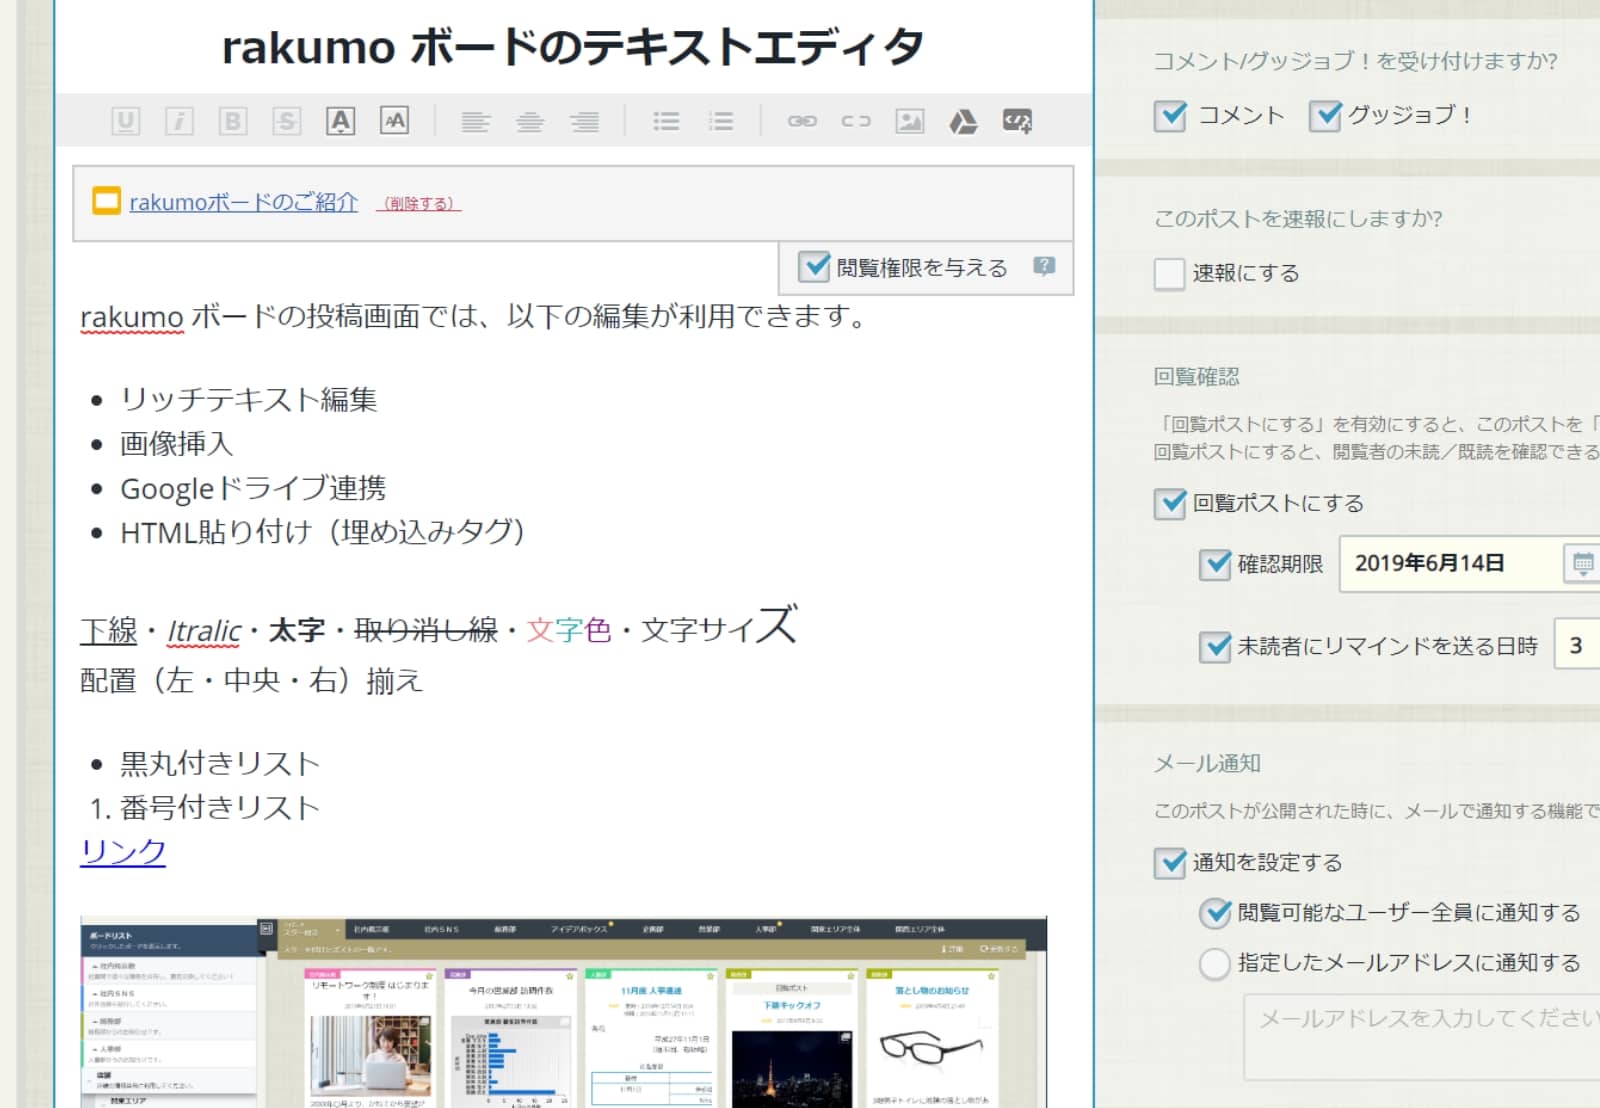 rakumo ボード エディタで利用できる画面